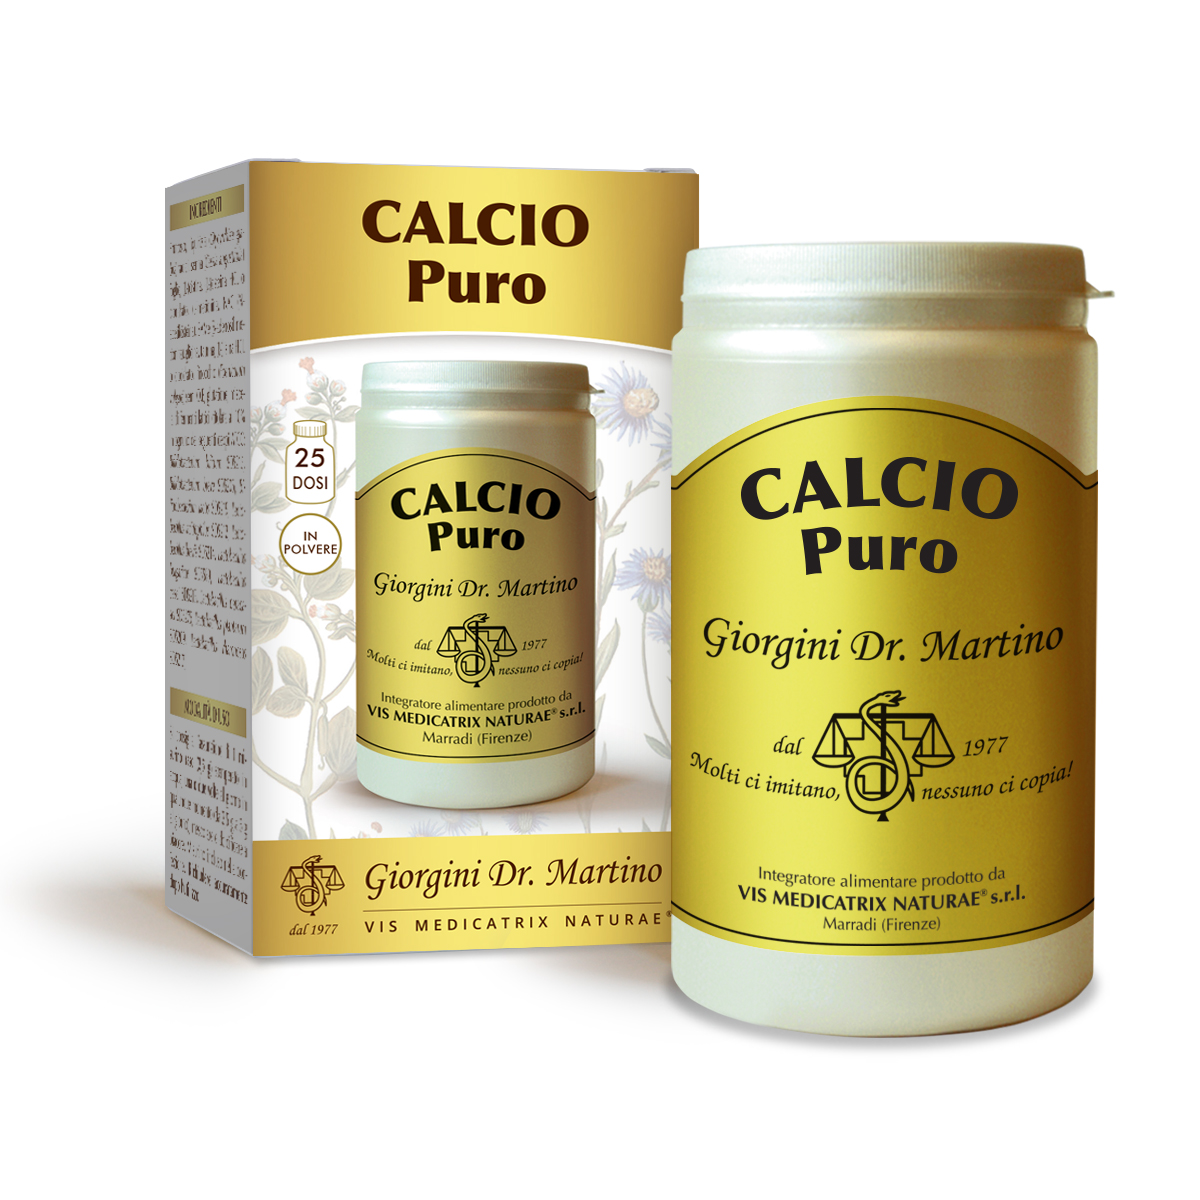 CALCIUM pure poudre 150 g 